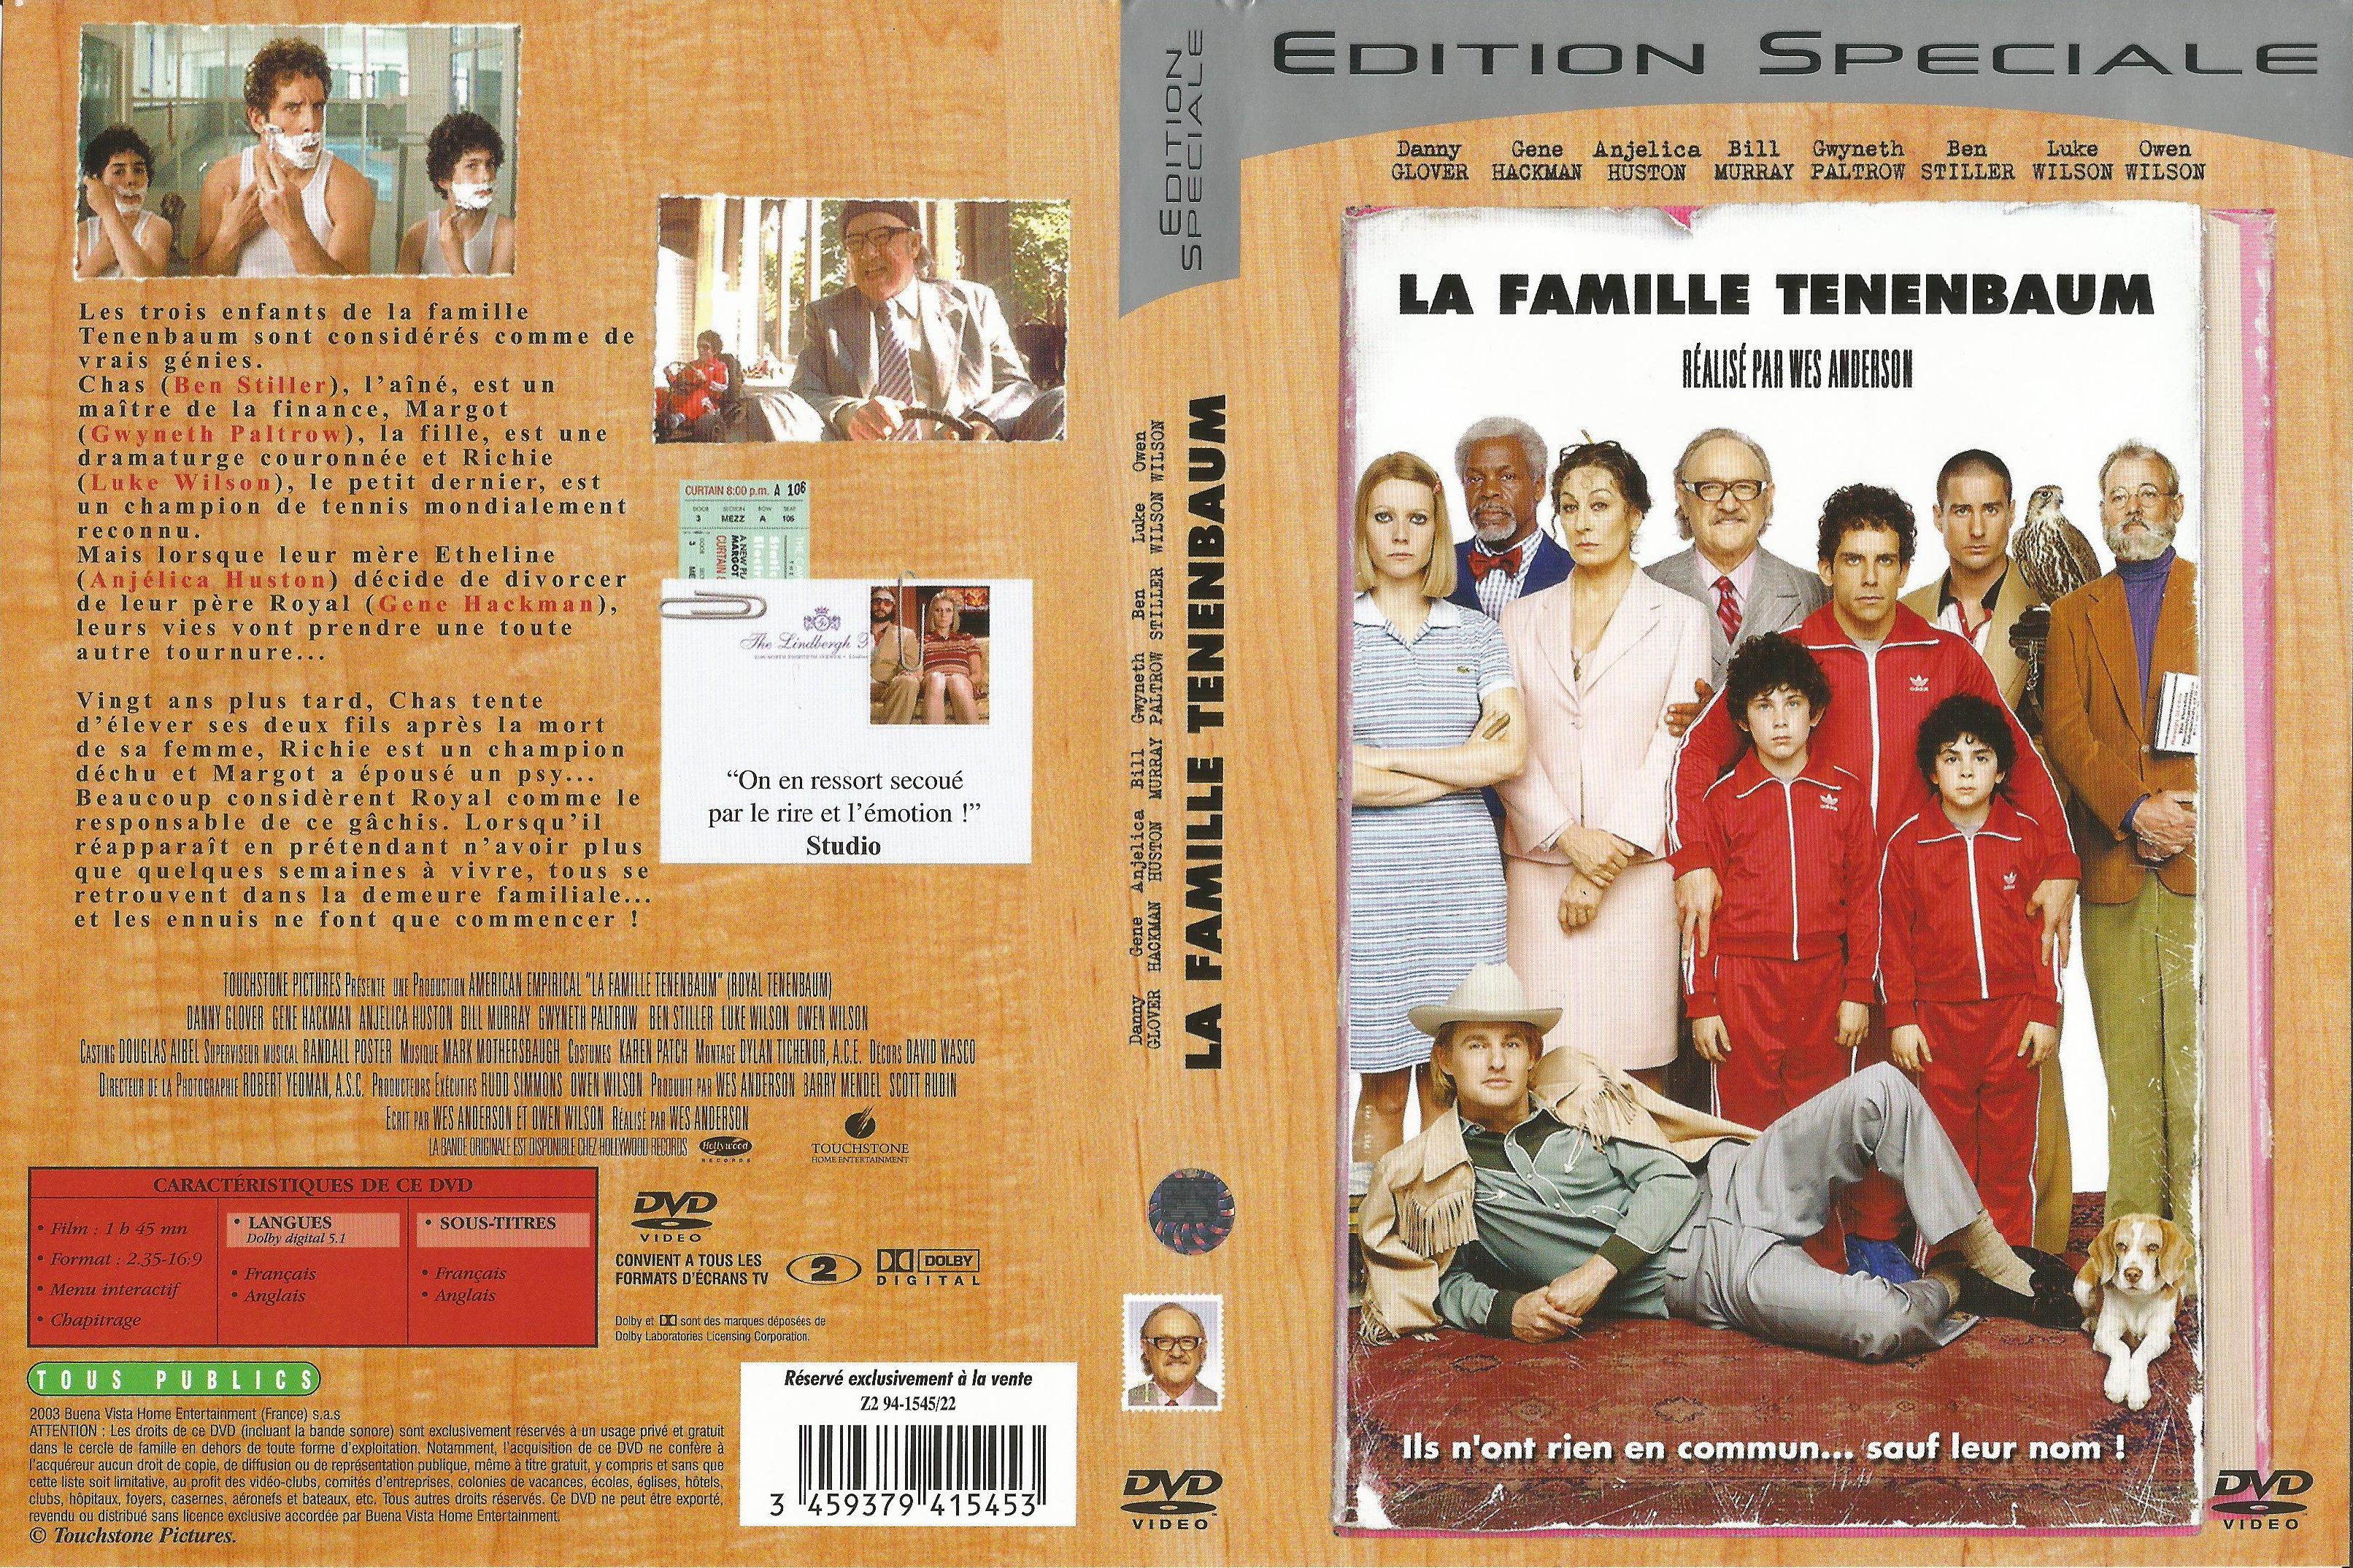 Jaquette DVD La famille Tenenbaum v2